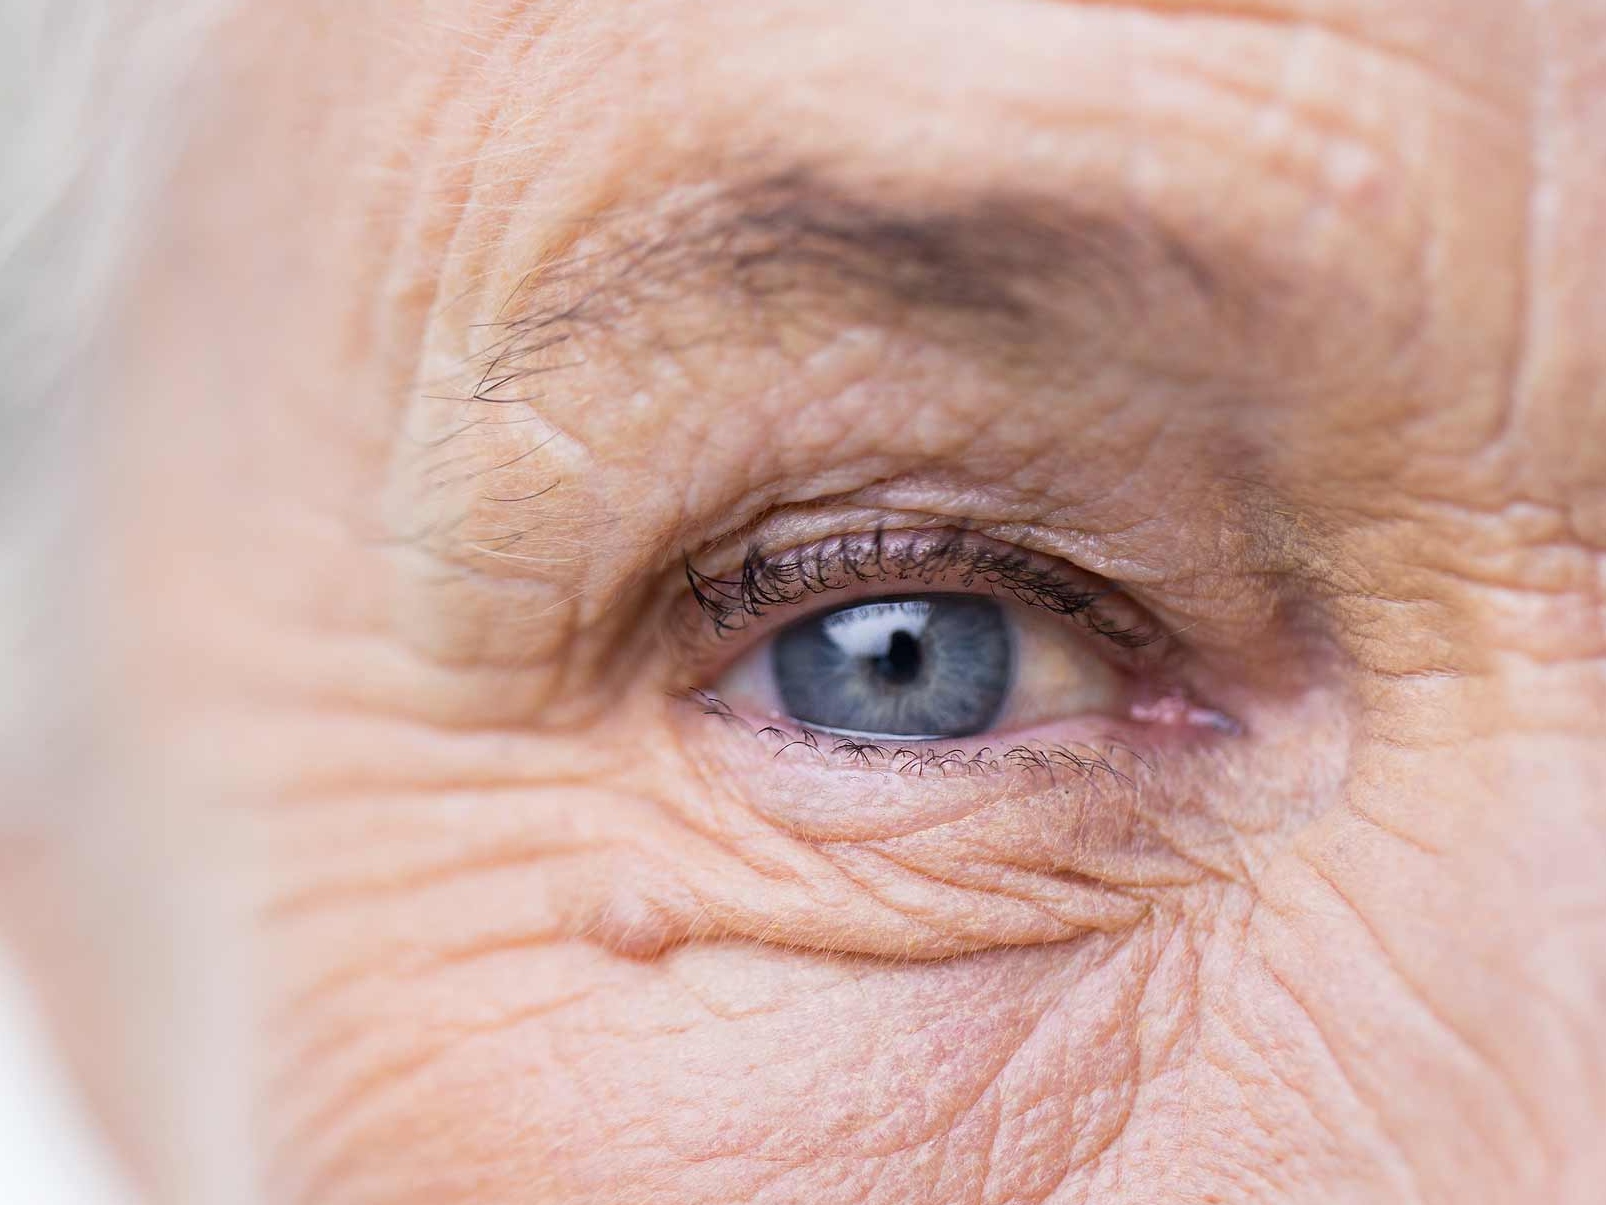 該圖片顯示了一隻不健康眼睛的特寫，說明了潛在的眼部附件危害。 